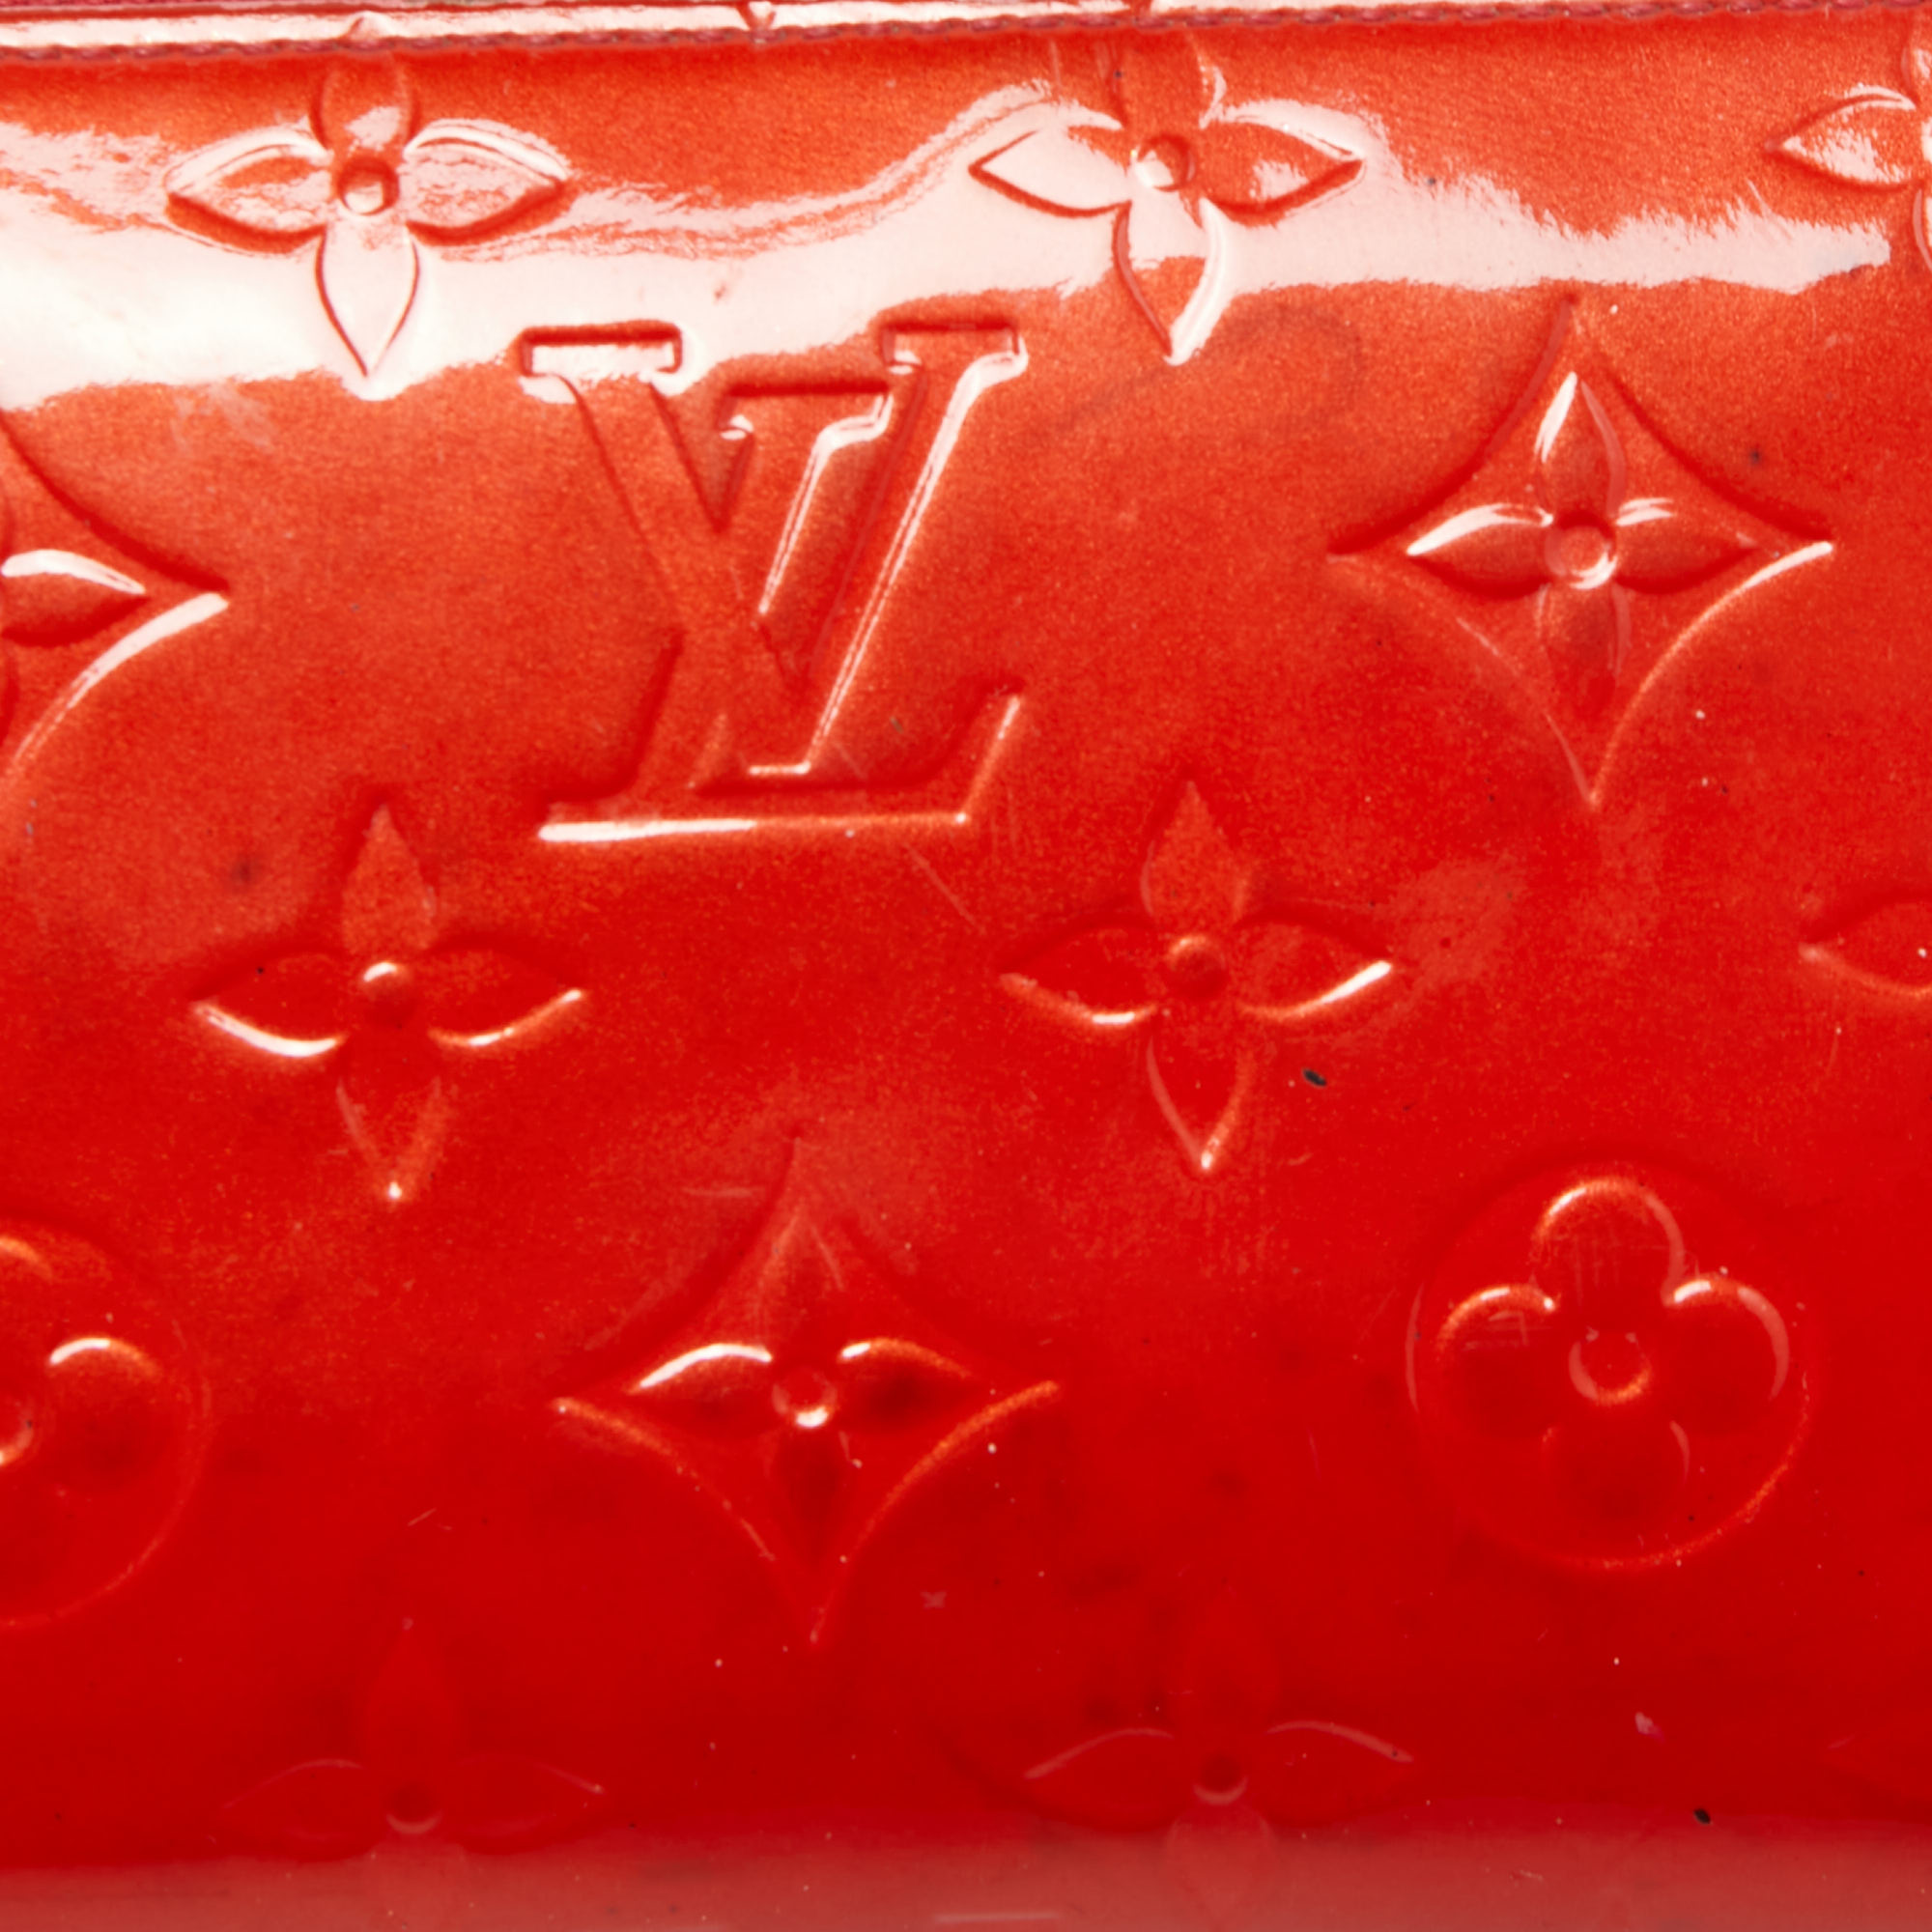 Louis Vuitton Pomme D’amour Monogram Vernis Zippy Wallet